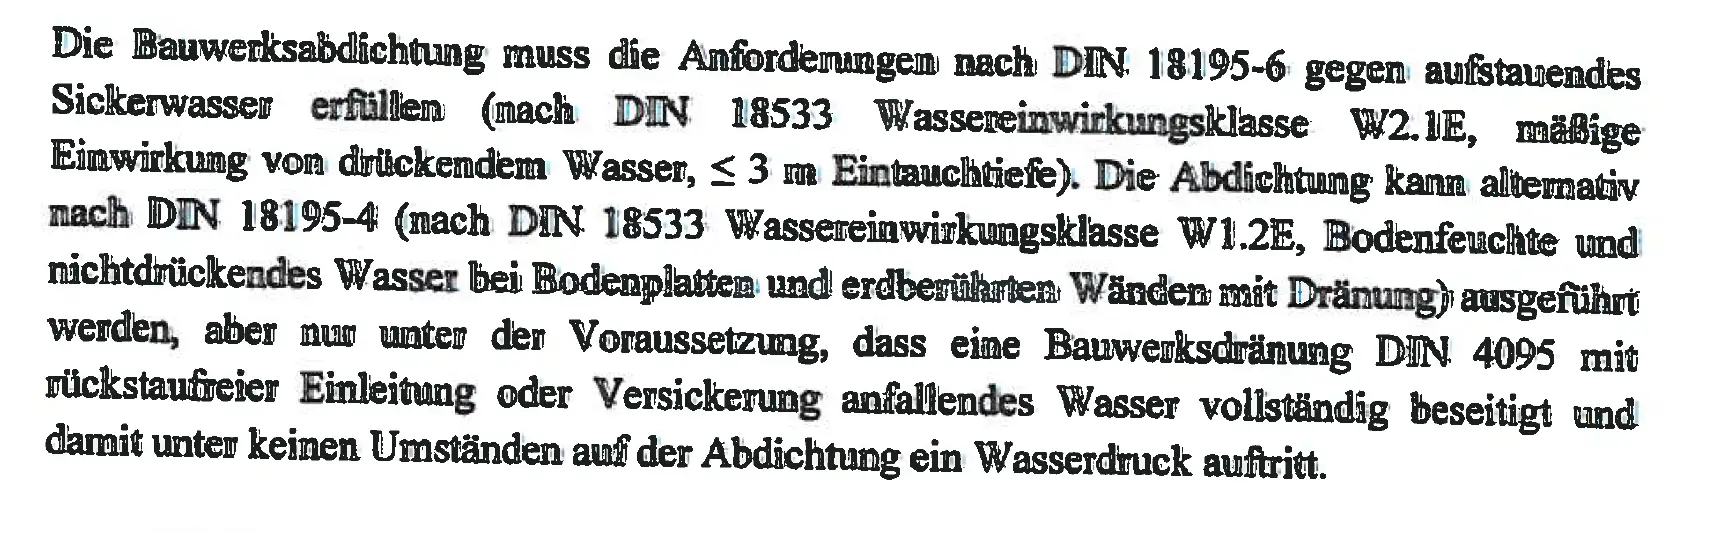 wasserdichter-keller-ungefaehre-preiseinschaetzung-471153-1.png